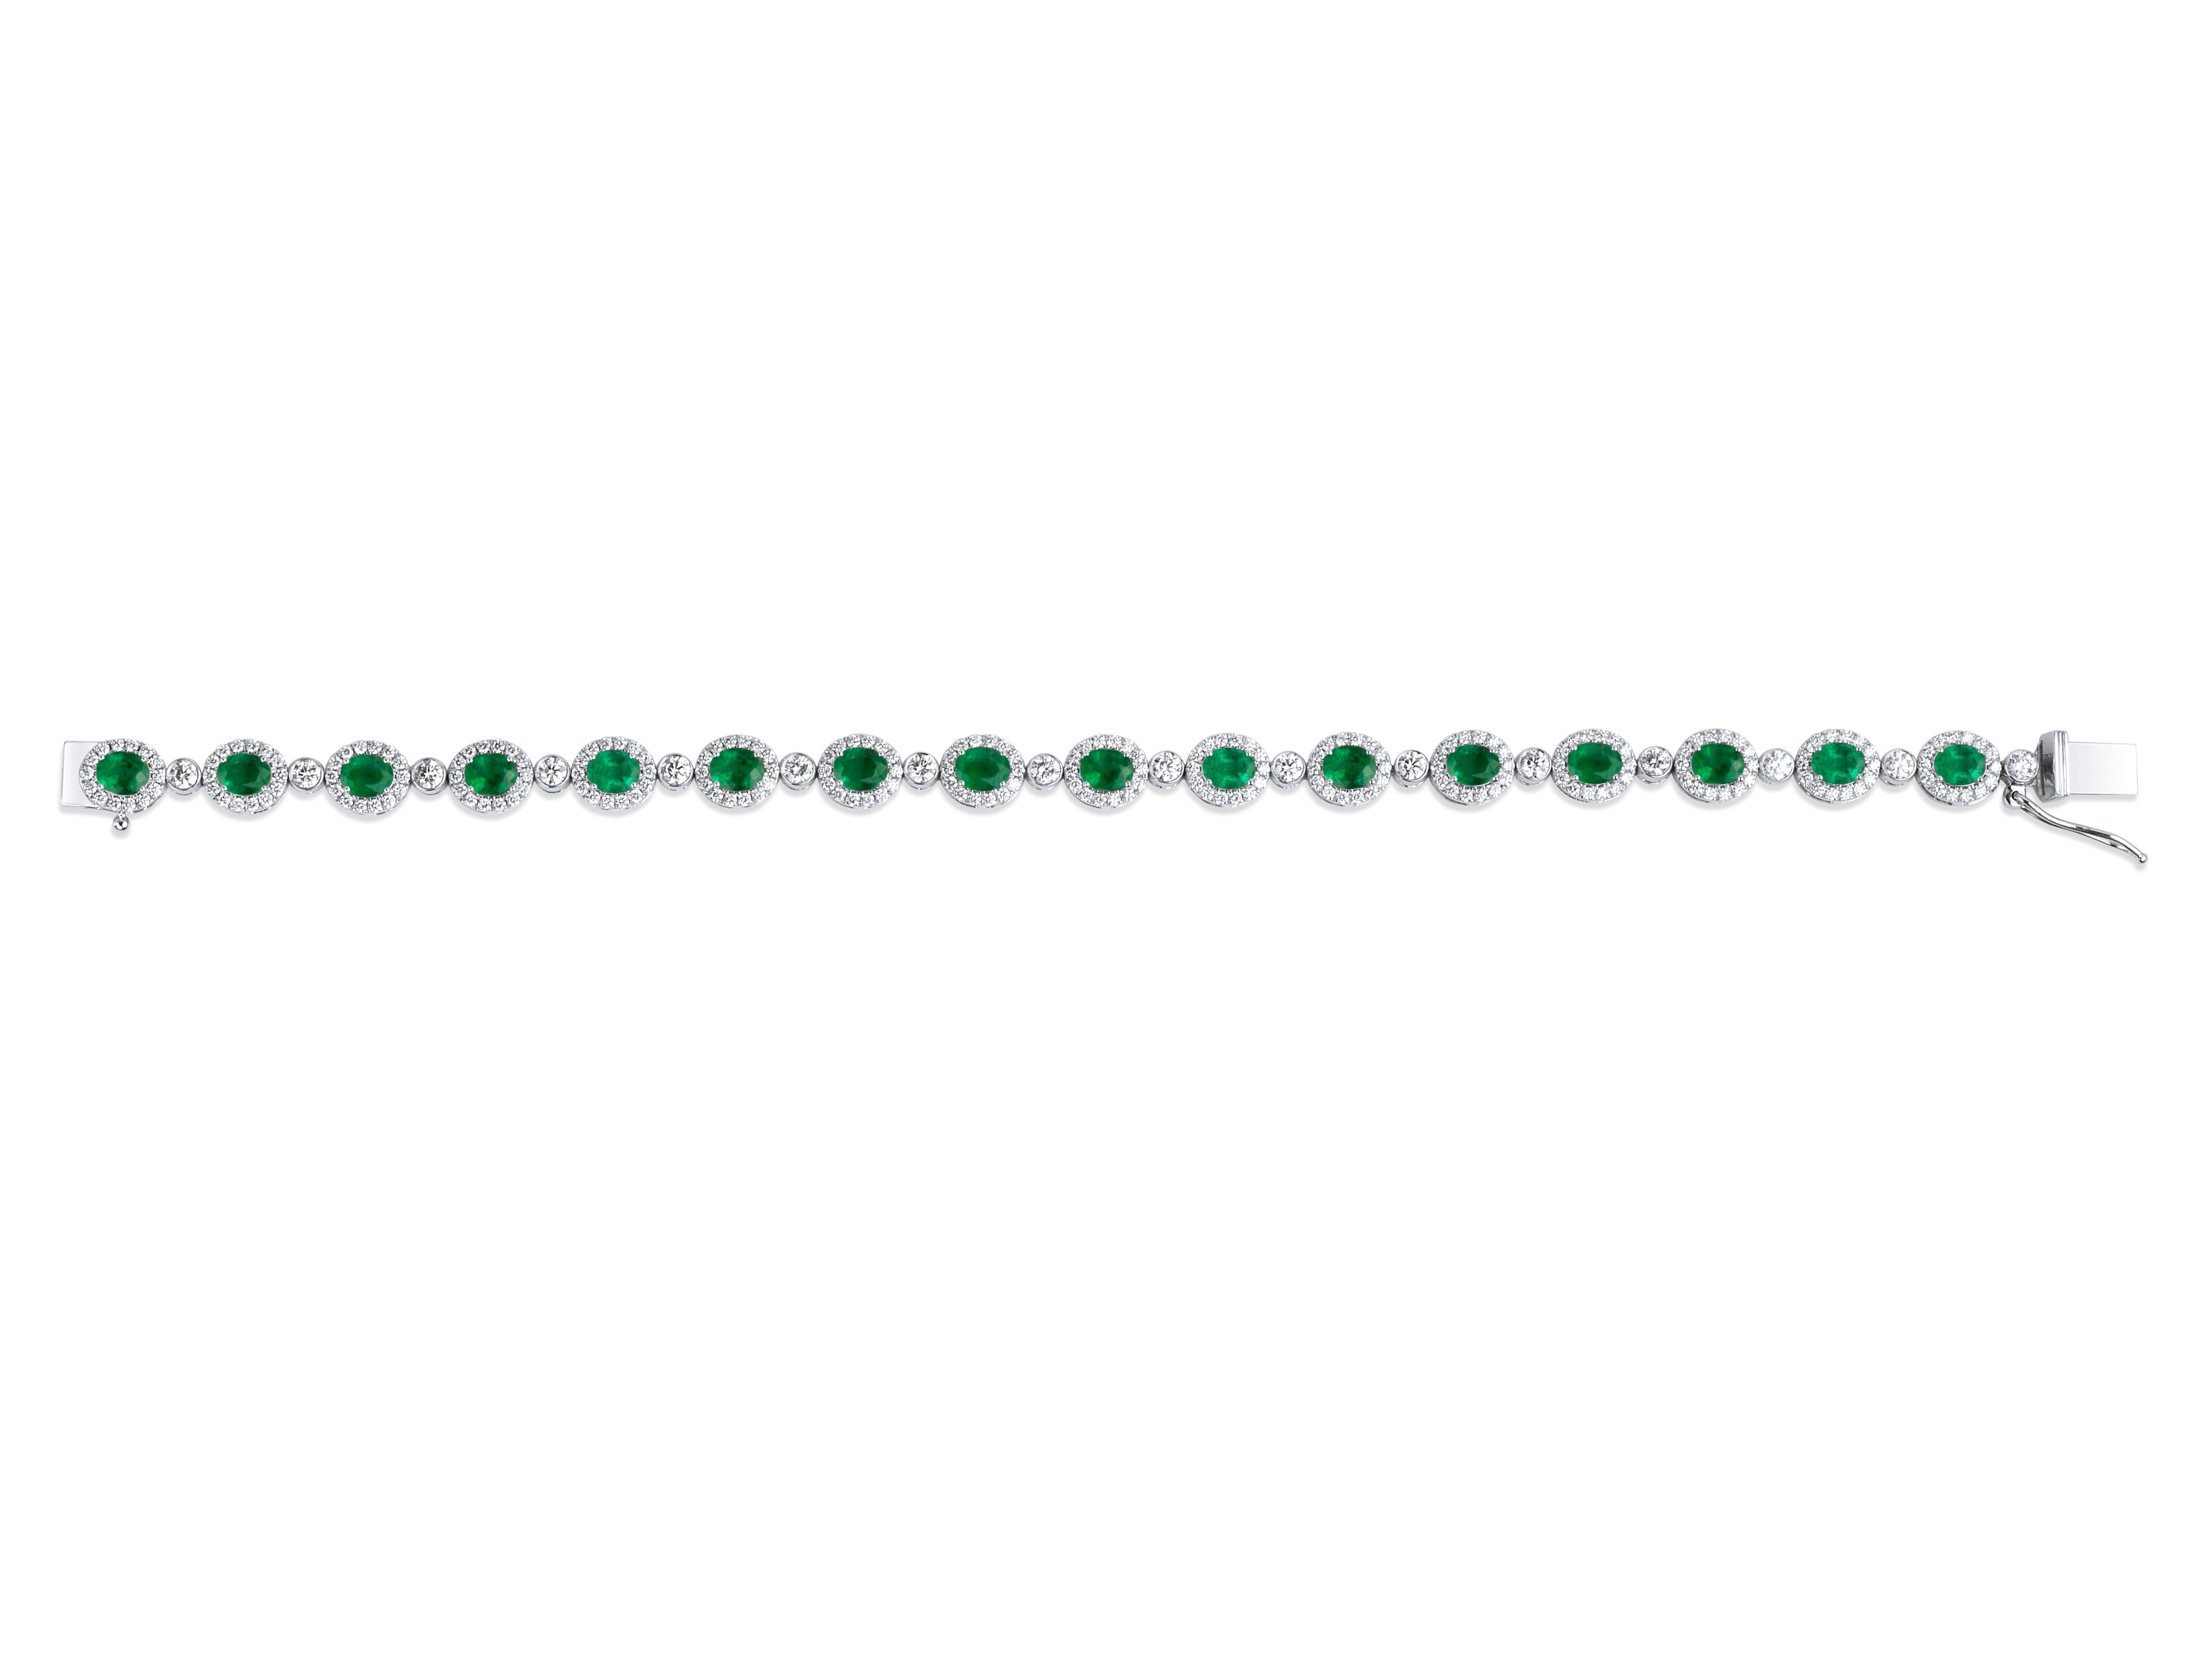 Exceptionnel bracelet en or blanc 18 carats avec émeraudes naturelles taille ovale de 5 carats et diamants

✤ 𝐃𝐞𝐭𝐚𝐢𝐥𝐬
↦ Émeraude : 5 carats
✤ Diamant
↦ Couleur : F G
↦ Clarté : VS 
↦ Poids en carats : 2.88 TCW
↦ Processus de fabrication :